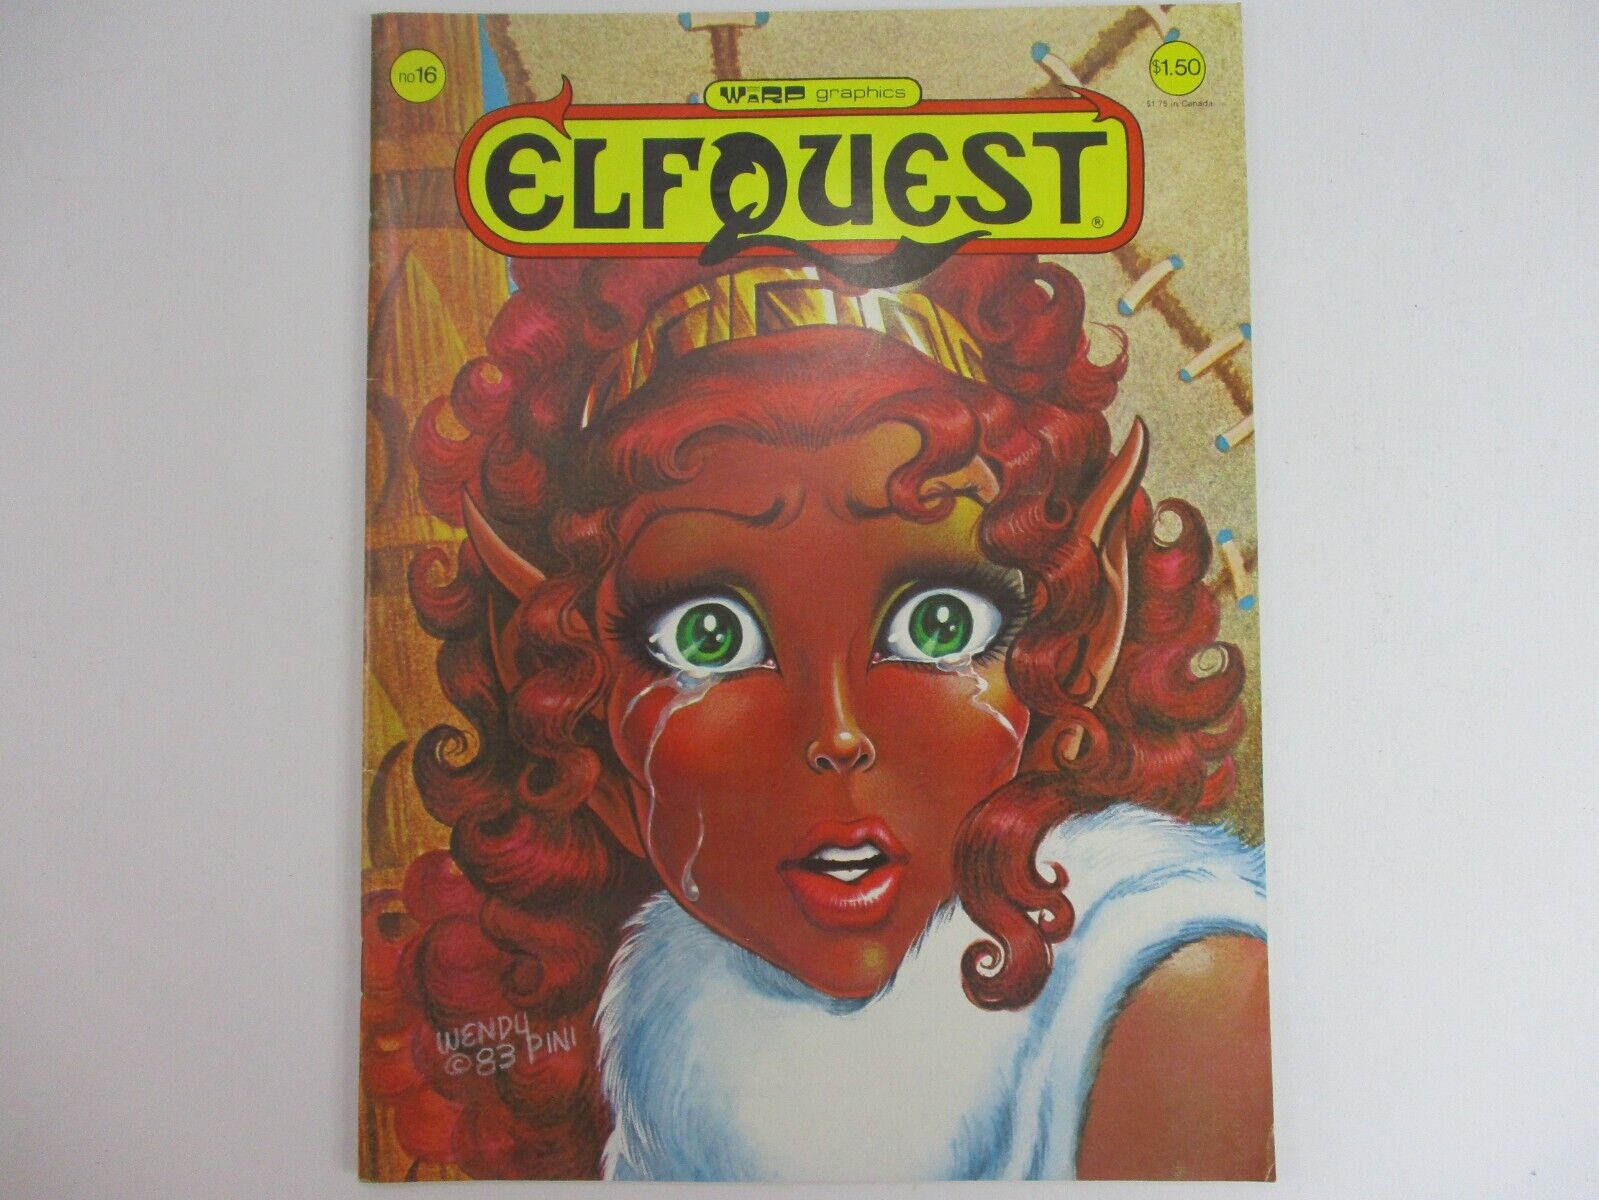 ELFQUEST #16 Warp Graphics 1983